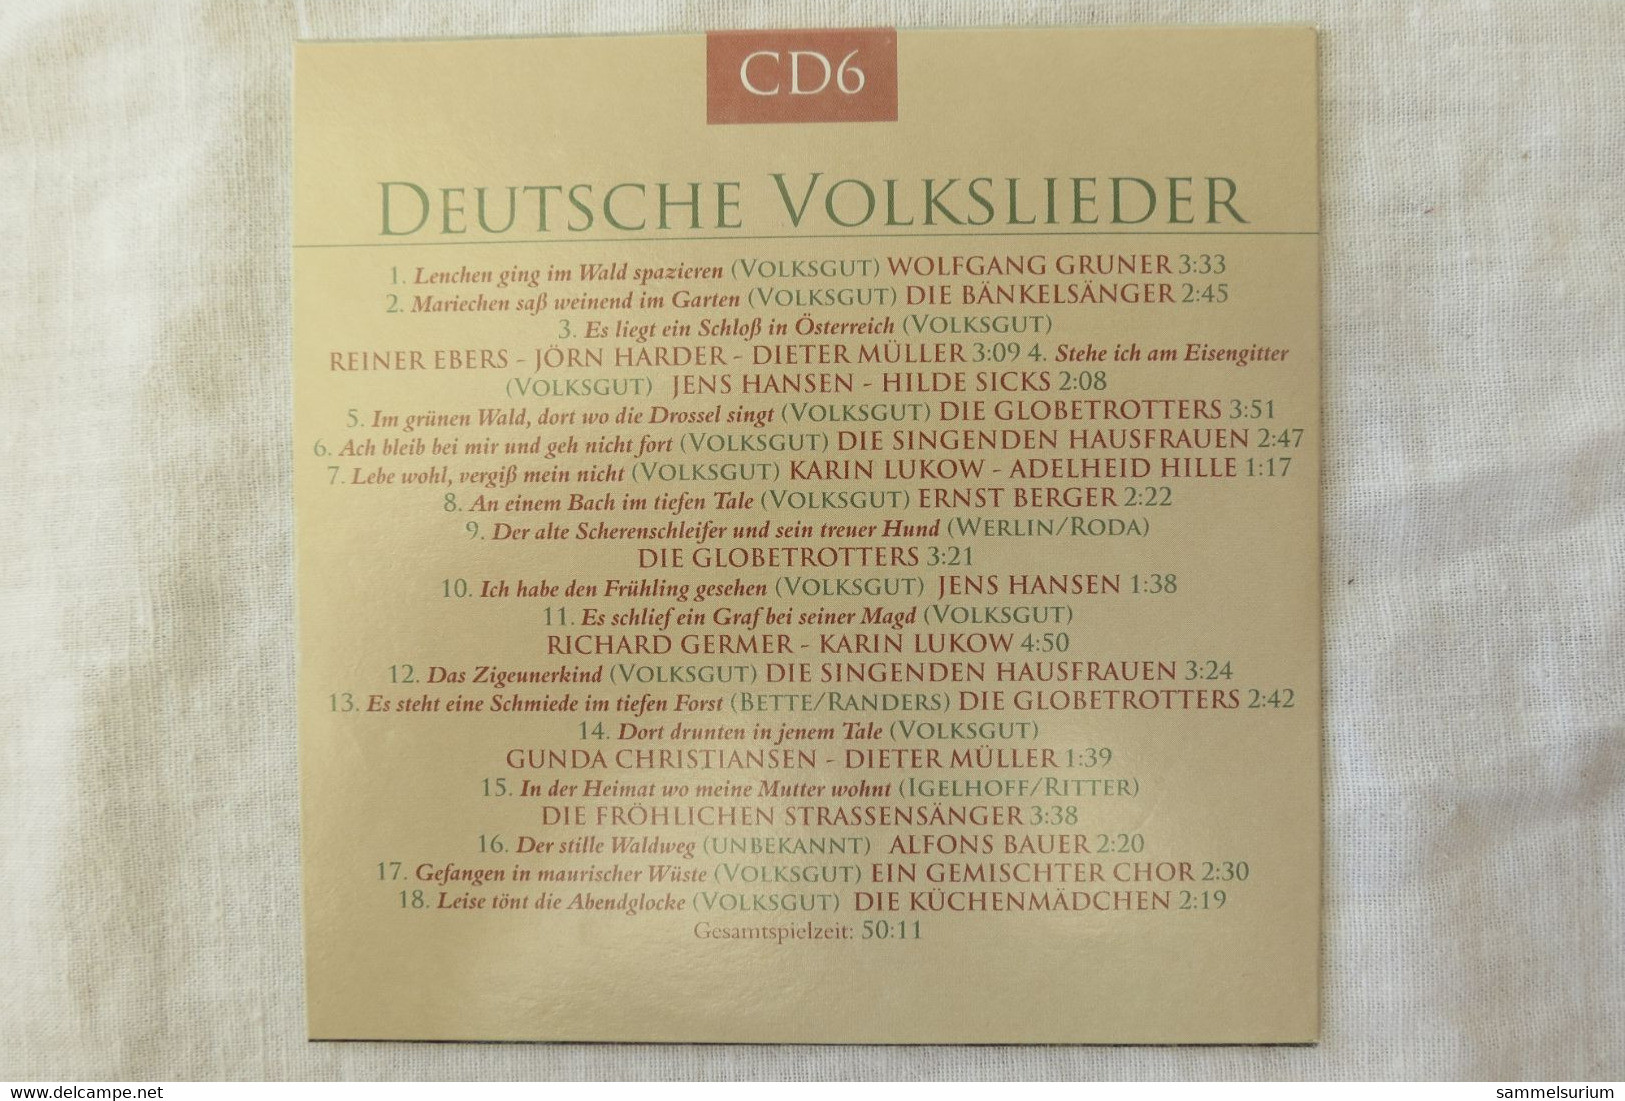 10 CDs Set "Deutsche Volkslieder" div. Interpreten